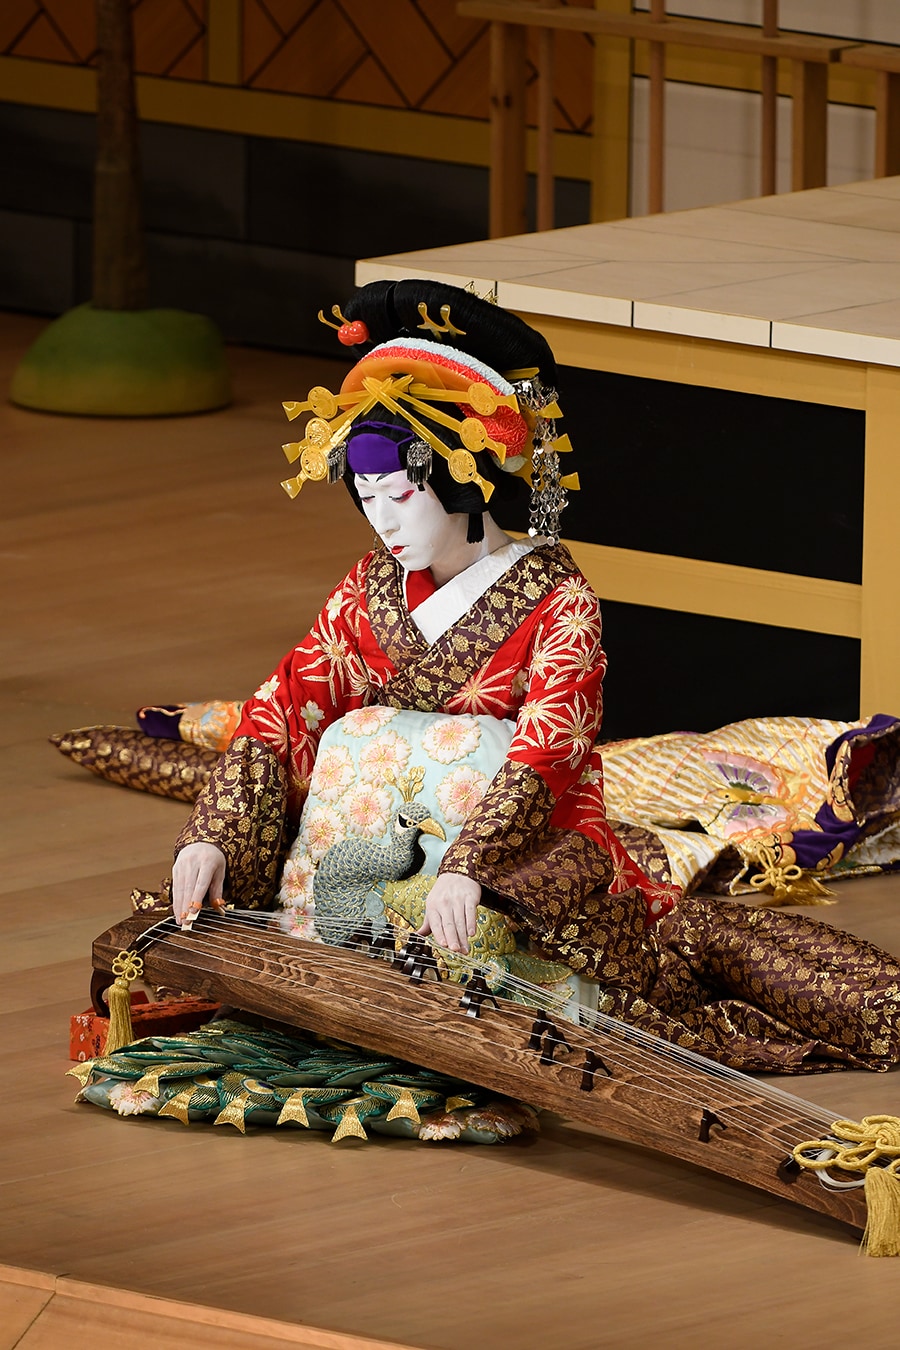 2019年12月歌舞伎座『壇浦兜軍記-阿古屋』より。舞台上で琴、三味線、胡弓の三曲を披露する阿古屋は女方屈指の大役と言われる。©松竹